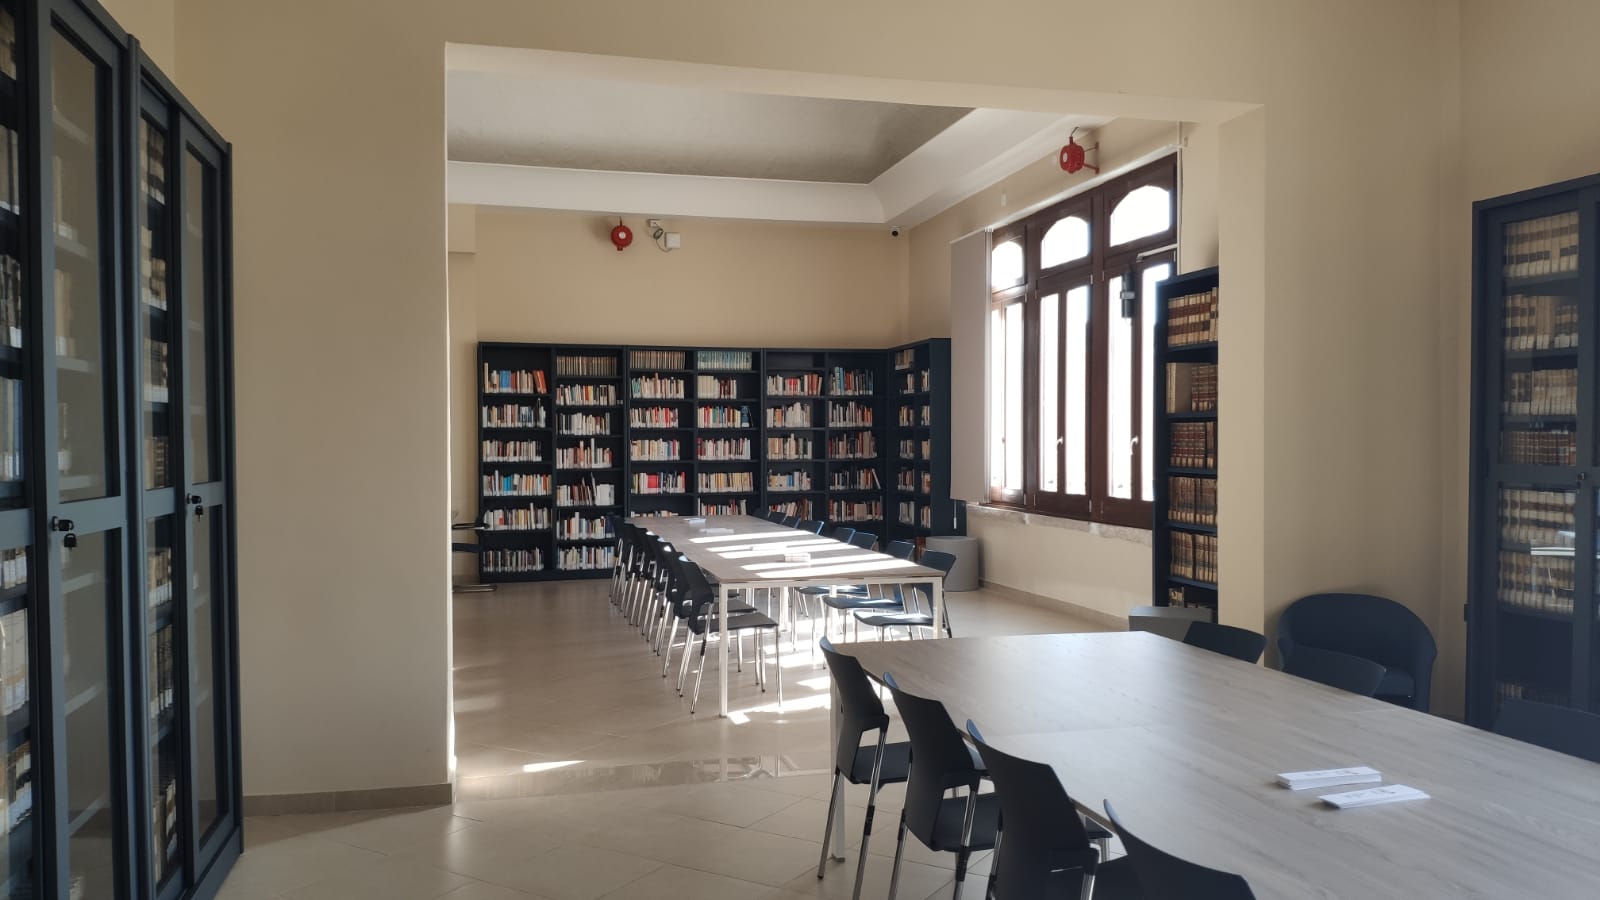 Galleria La biblioteca comunale di San Severo diventa una Community Library. Il vicepresidente Piemontese: “Un milione di euro stanziato dalla Regione. Investimento straordinario” - Diapositiva 5 di 9